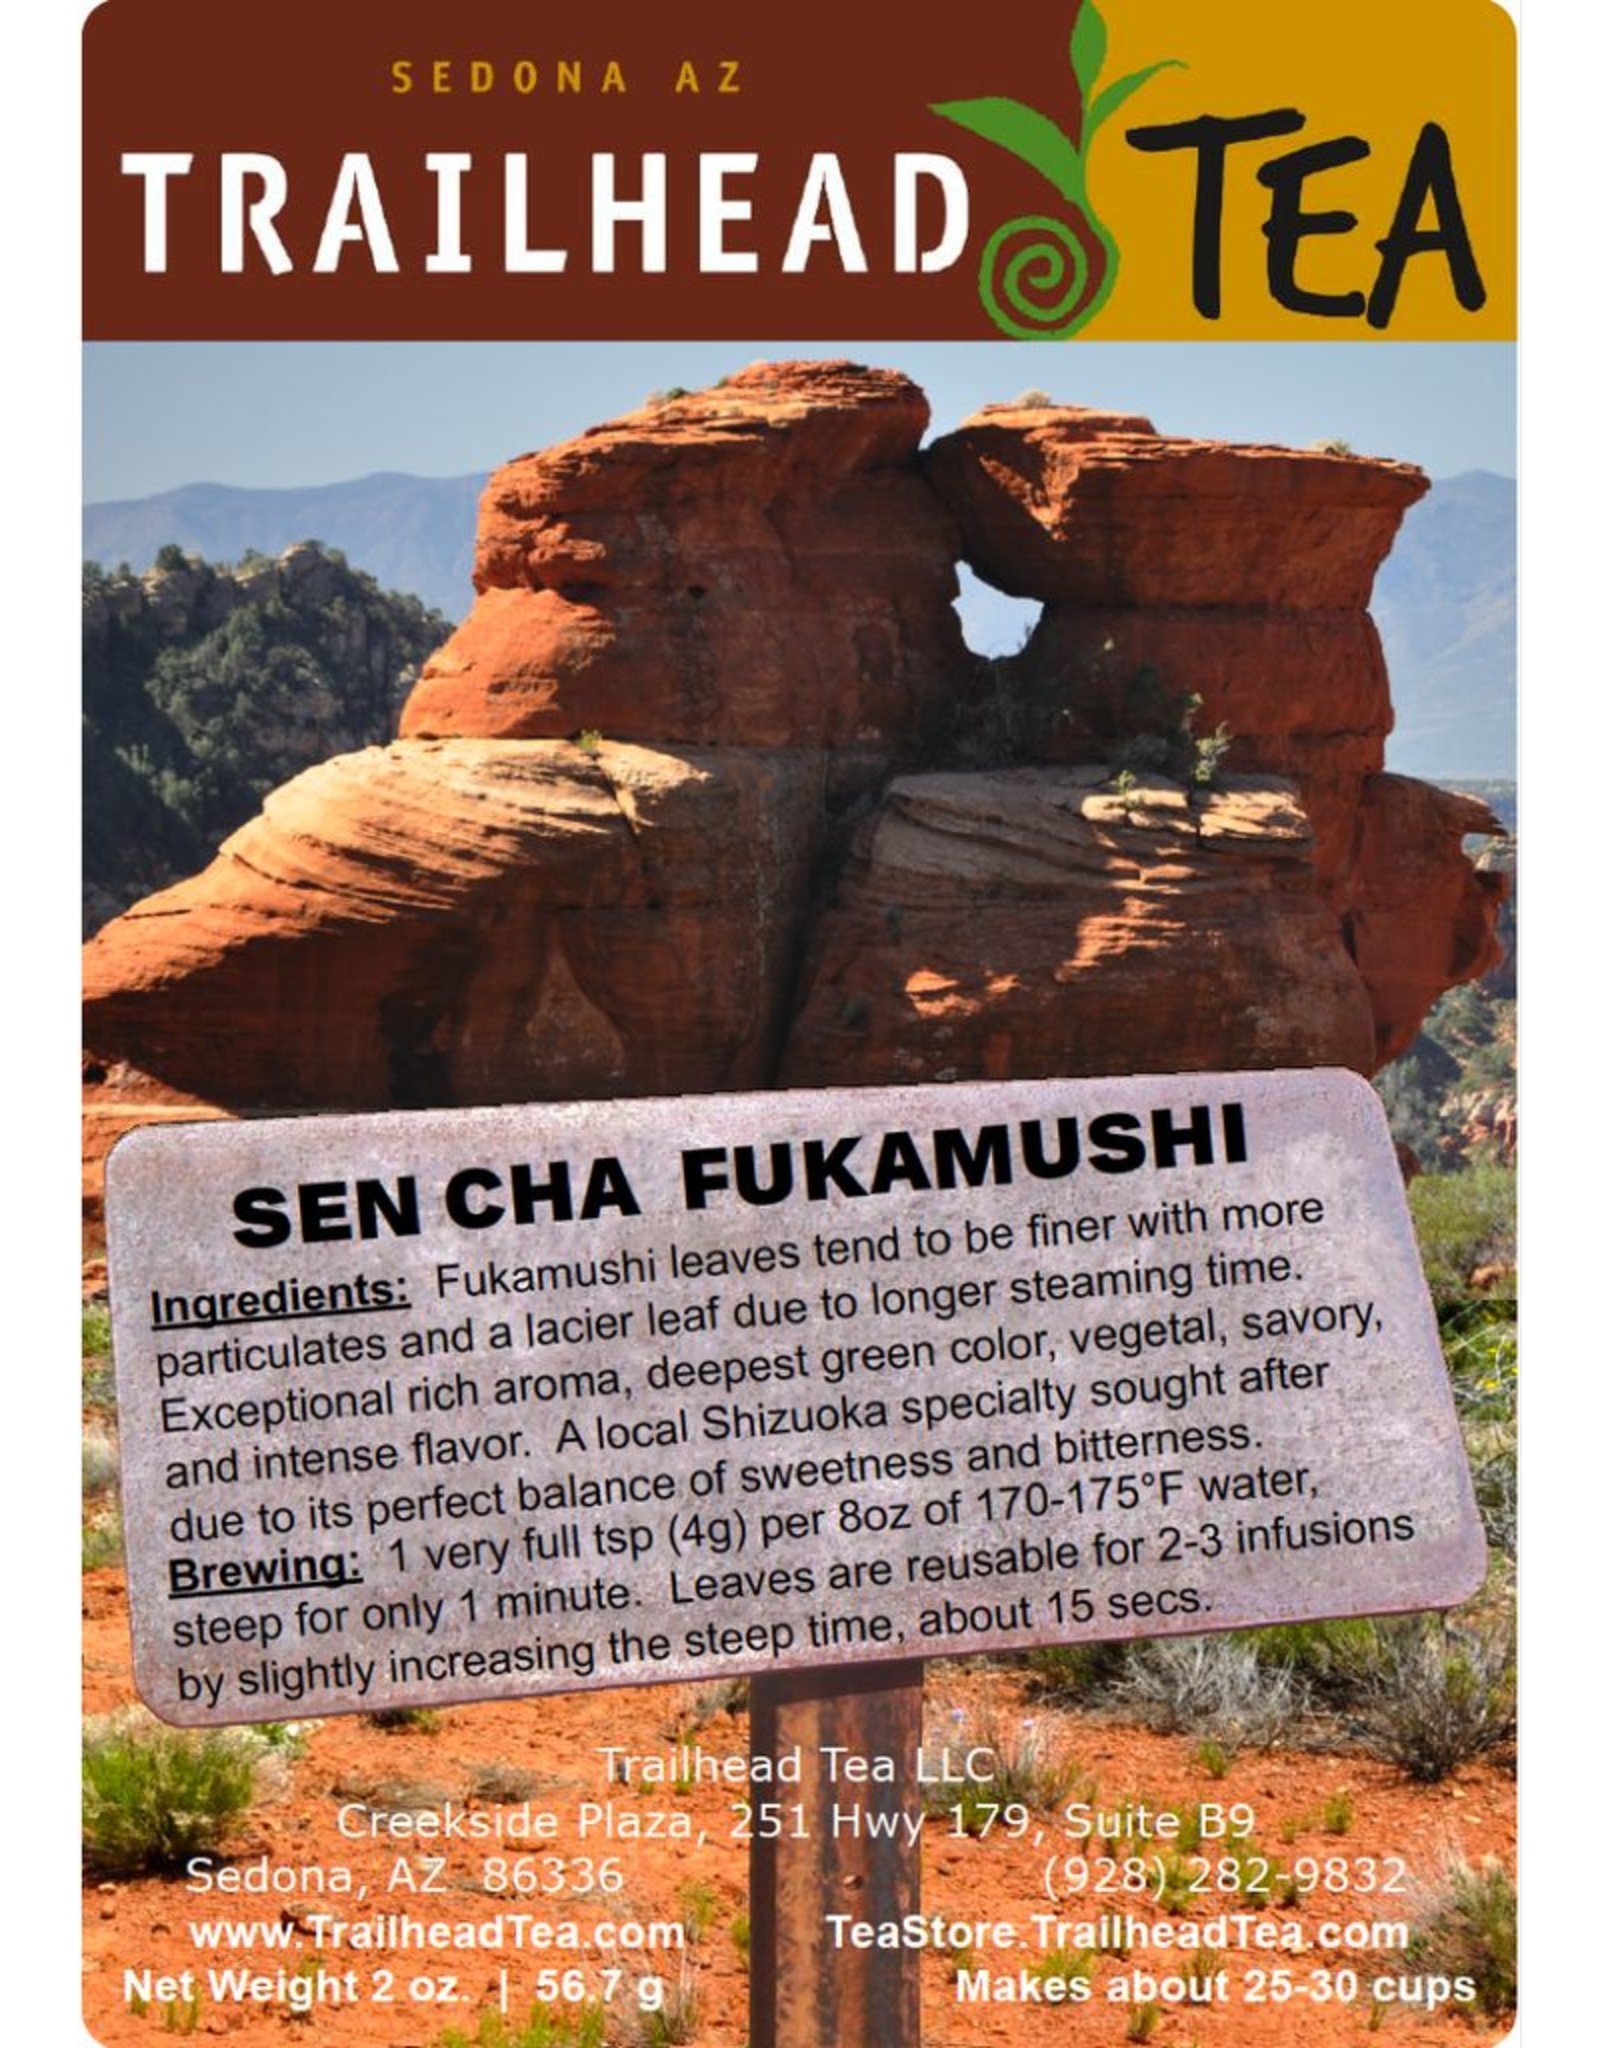 Tea from Japan Sencha, Fukamushi (Deep Steam)